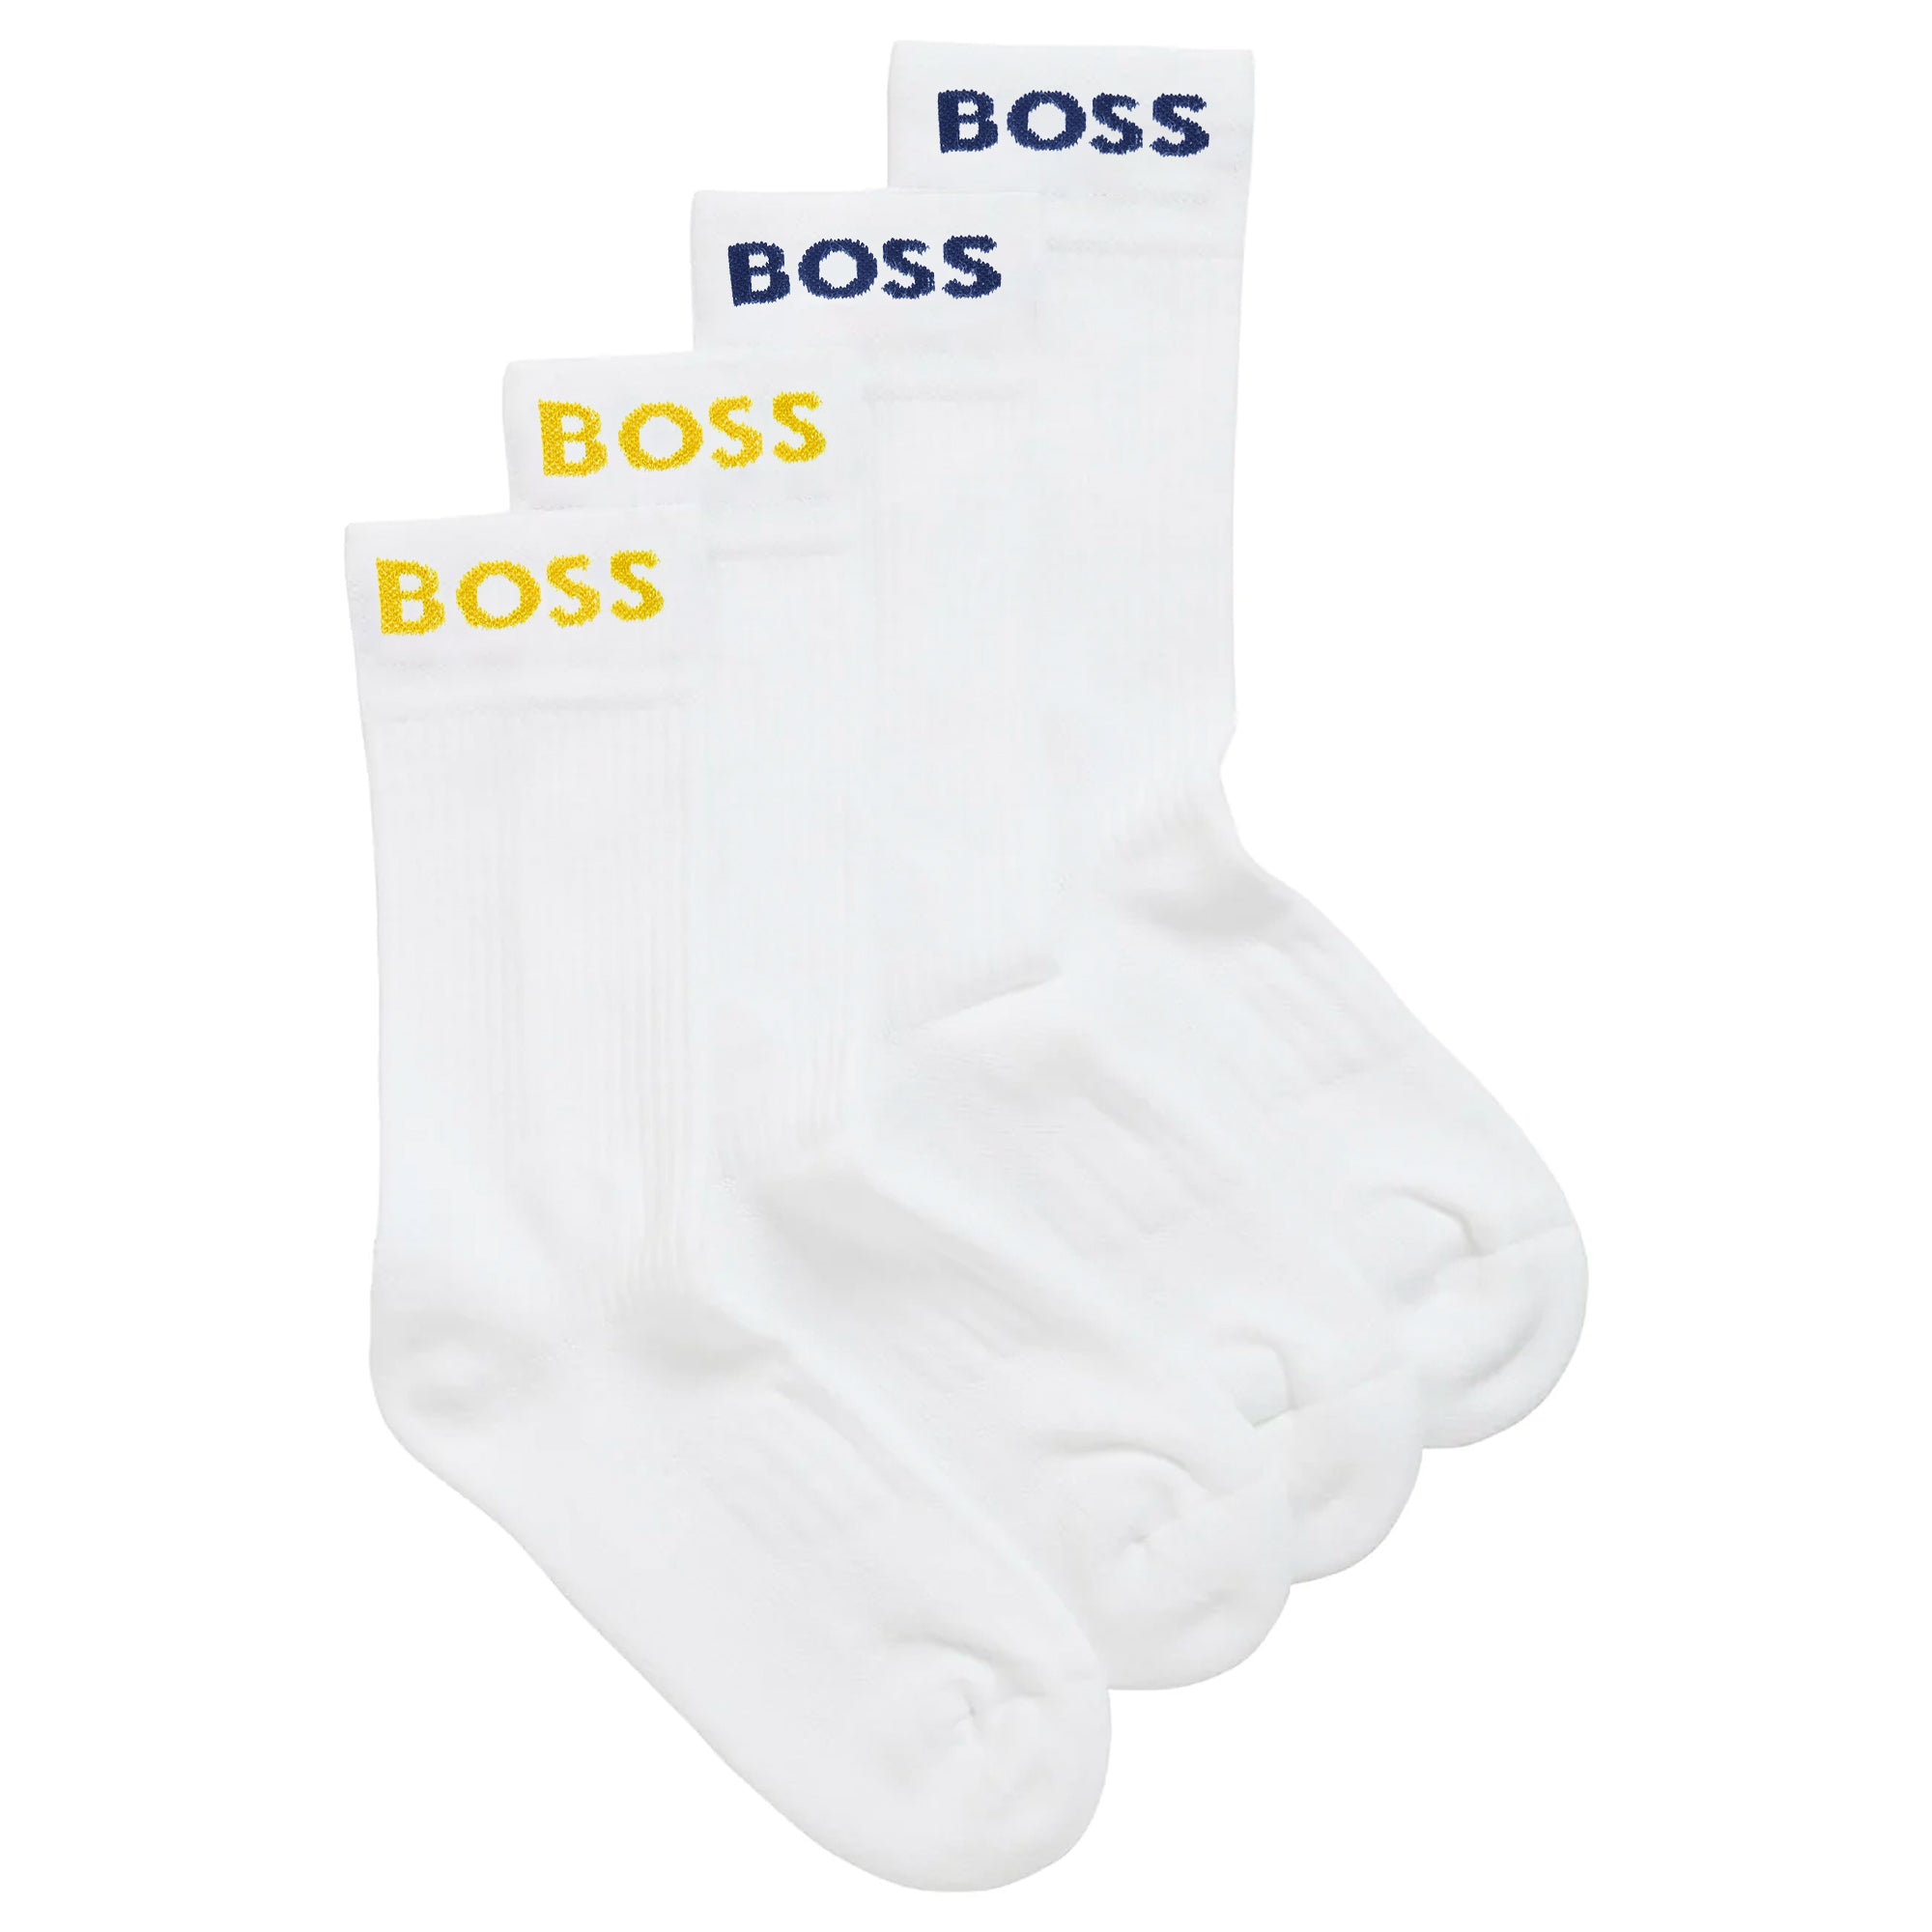 Boss 2 Pack RS Sport Socks - White/Yellow/Teal Blue